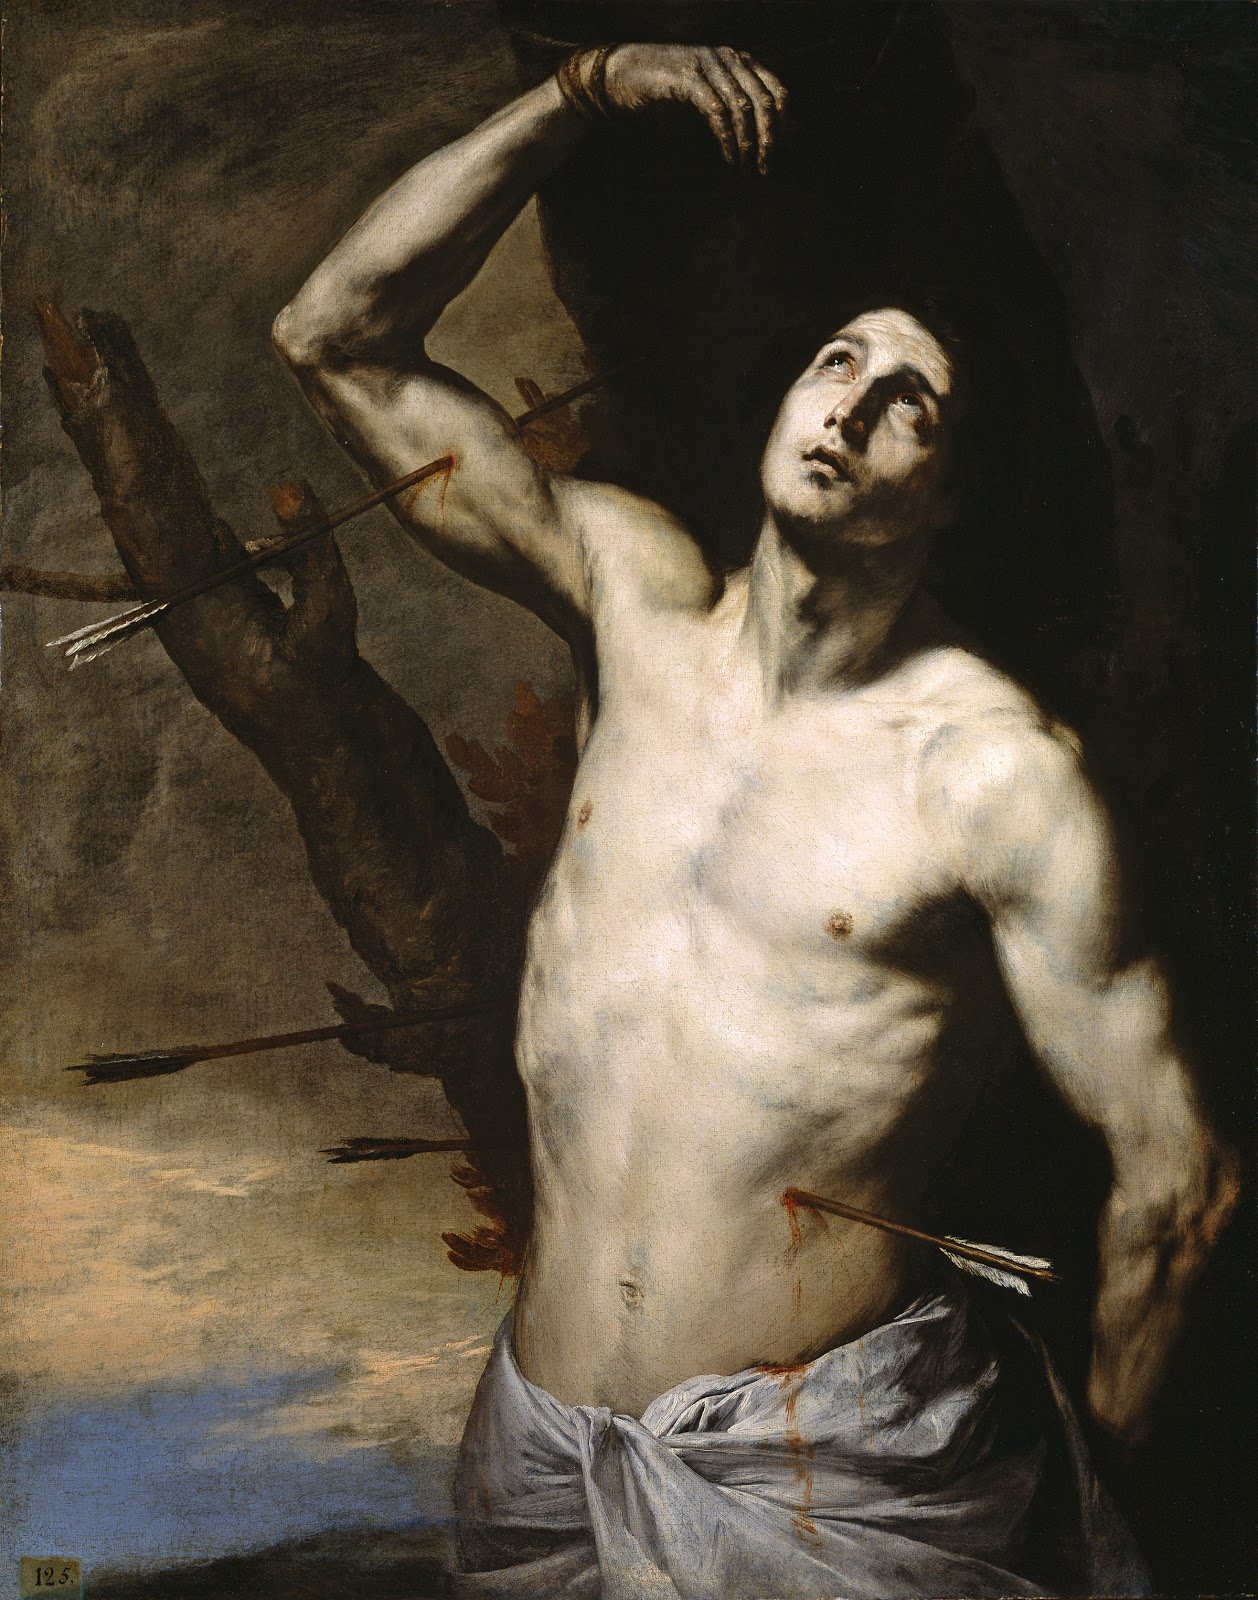 Jusepe+de+Ribera-1591-1652 (89).jpg